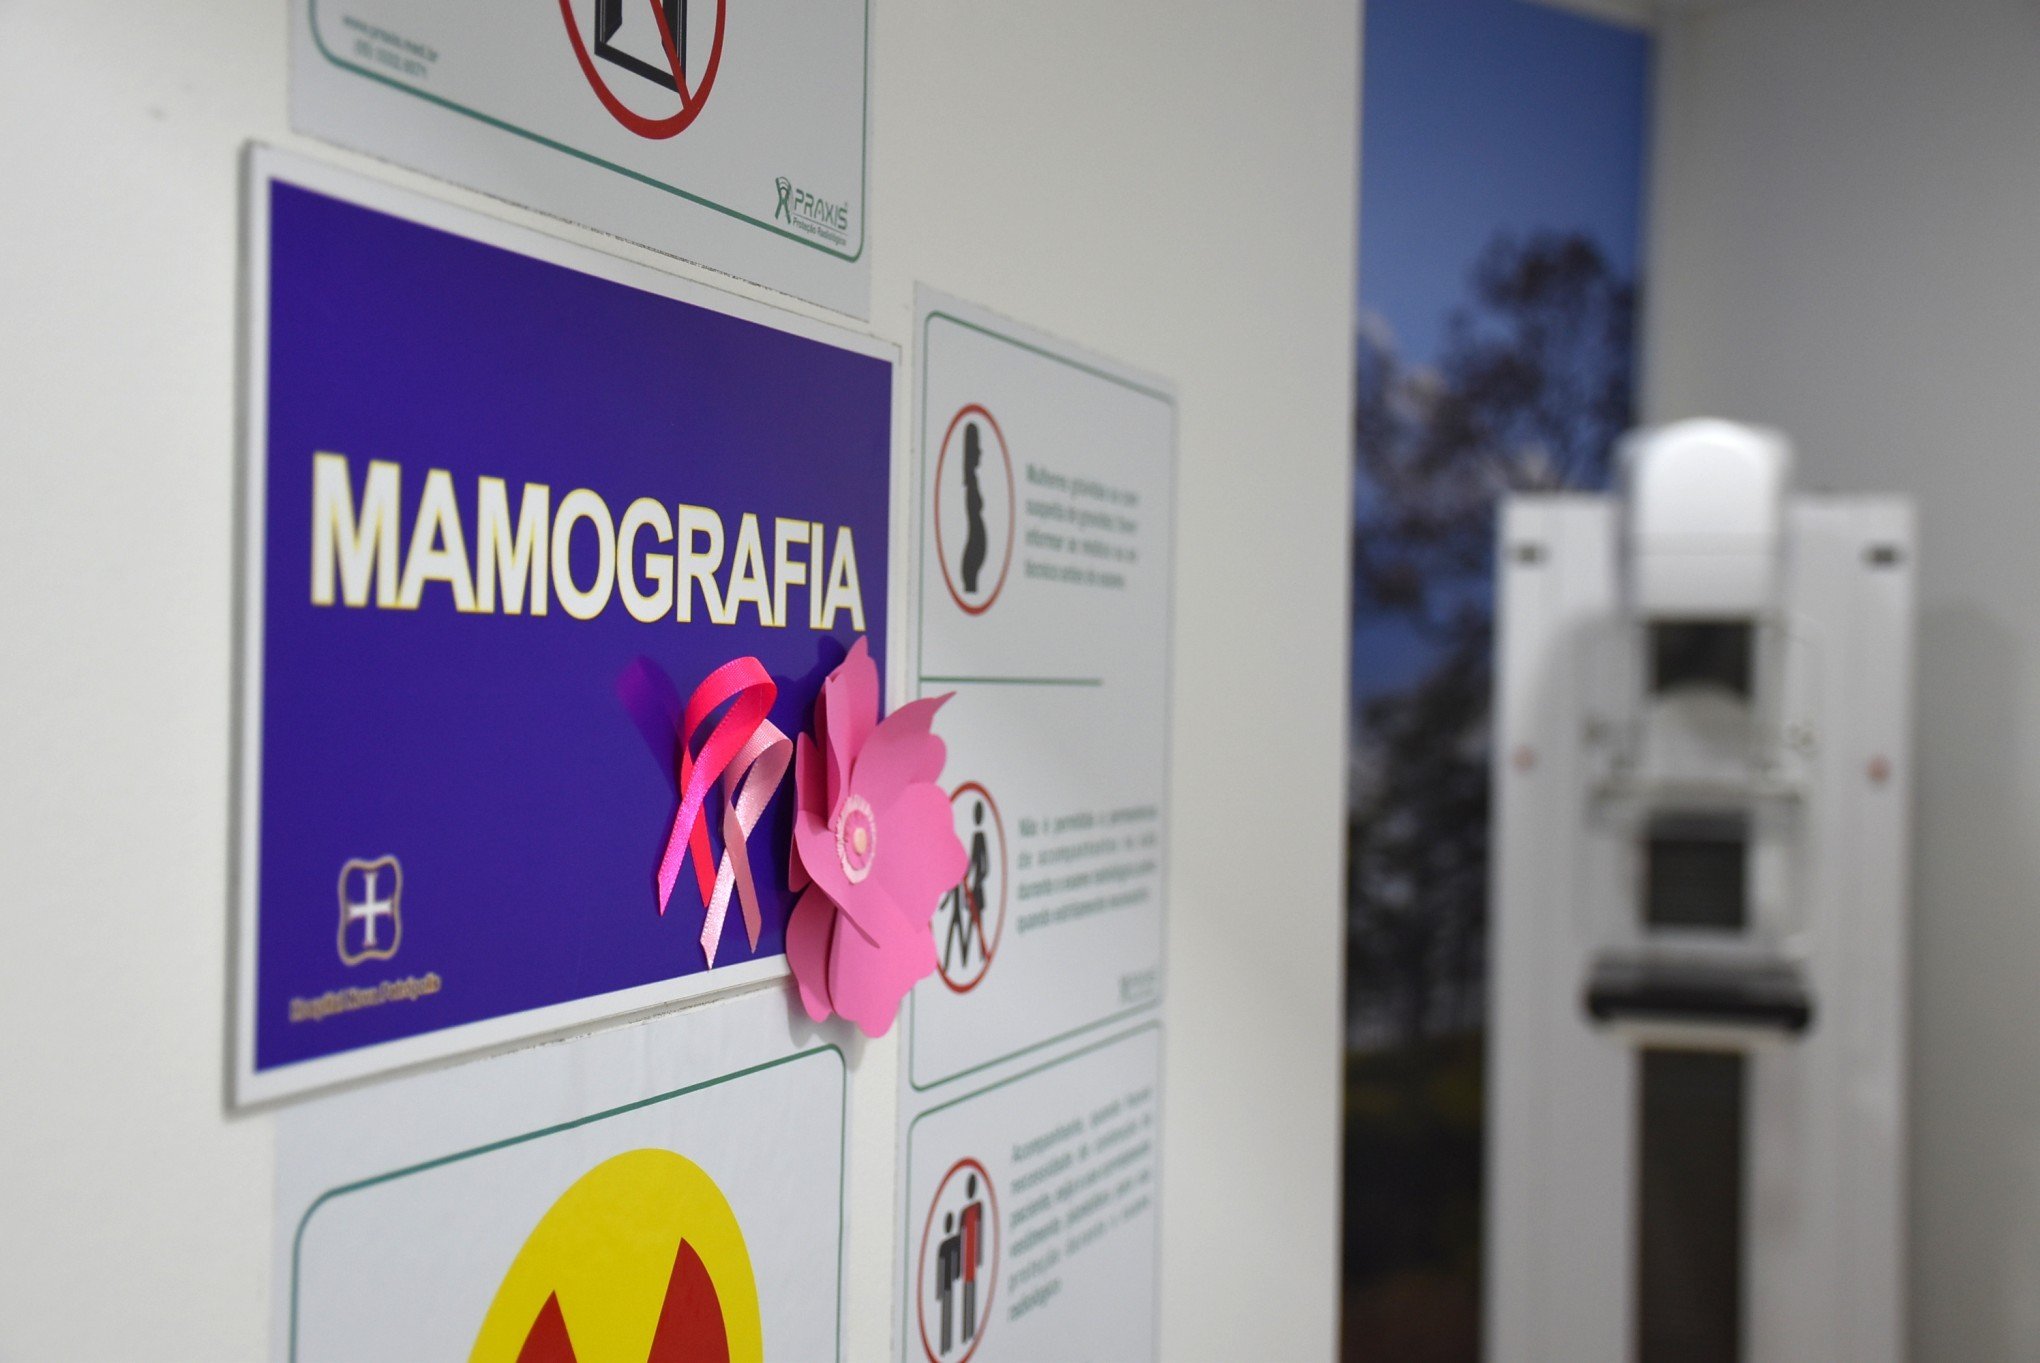 Lista de espera por mamografias é zerada em município da Serra gaúcha; confira